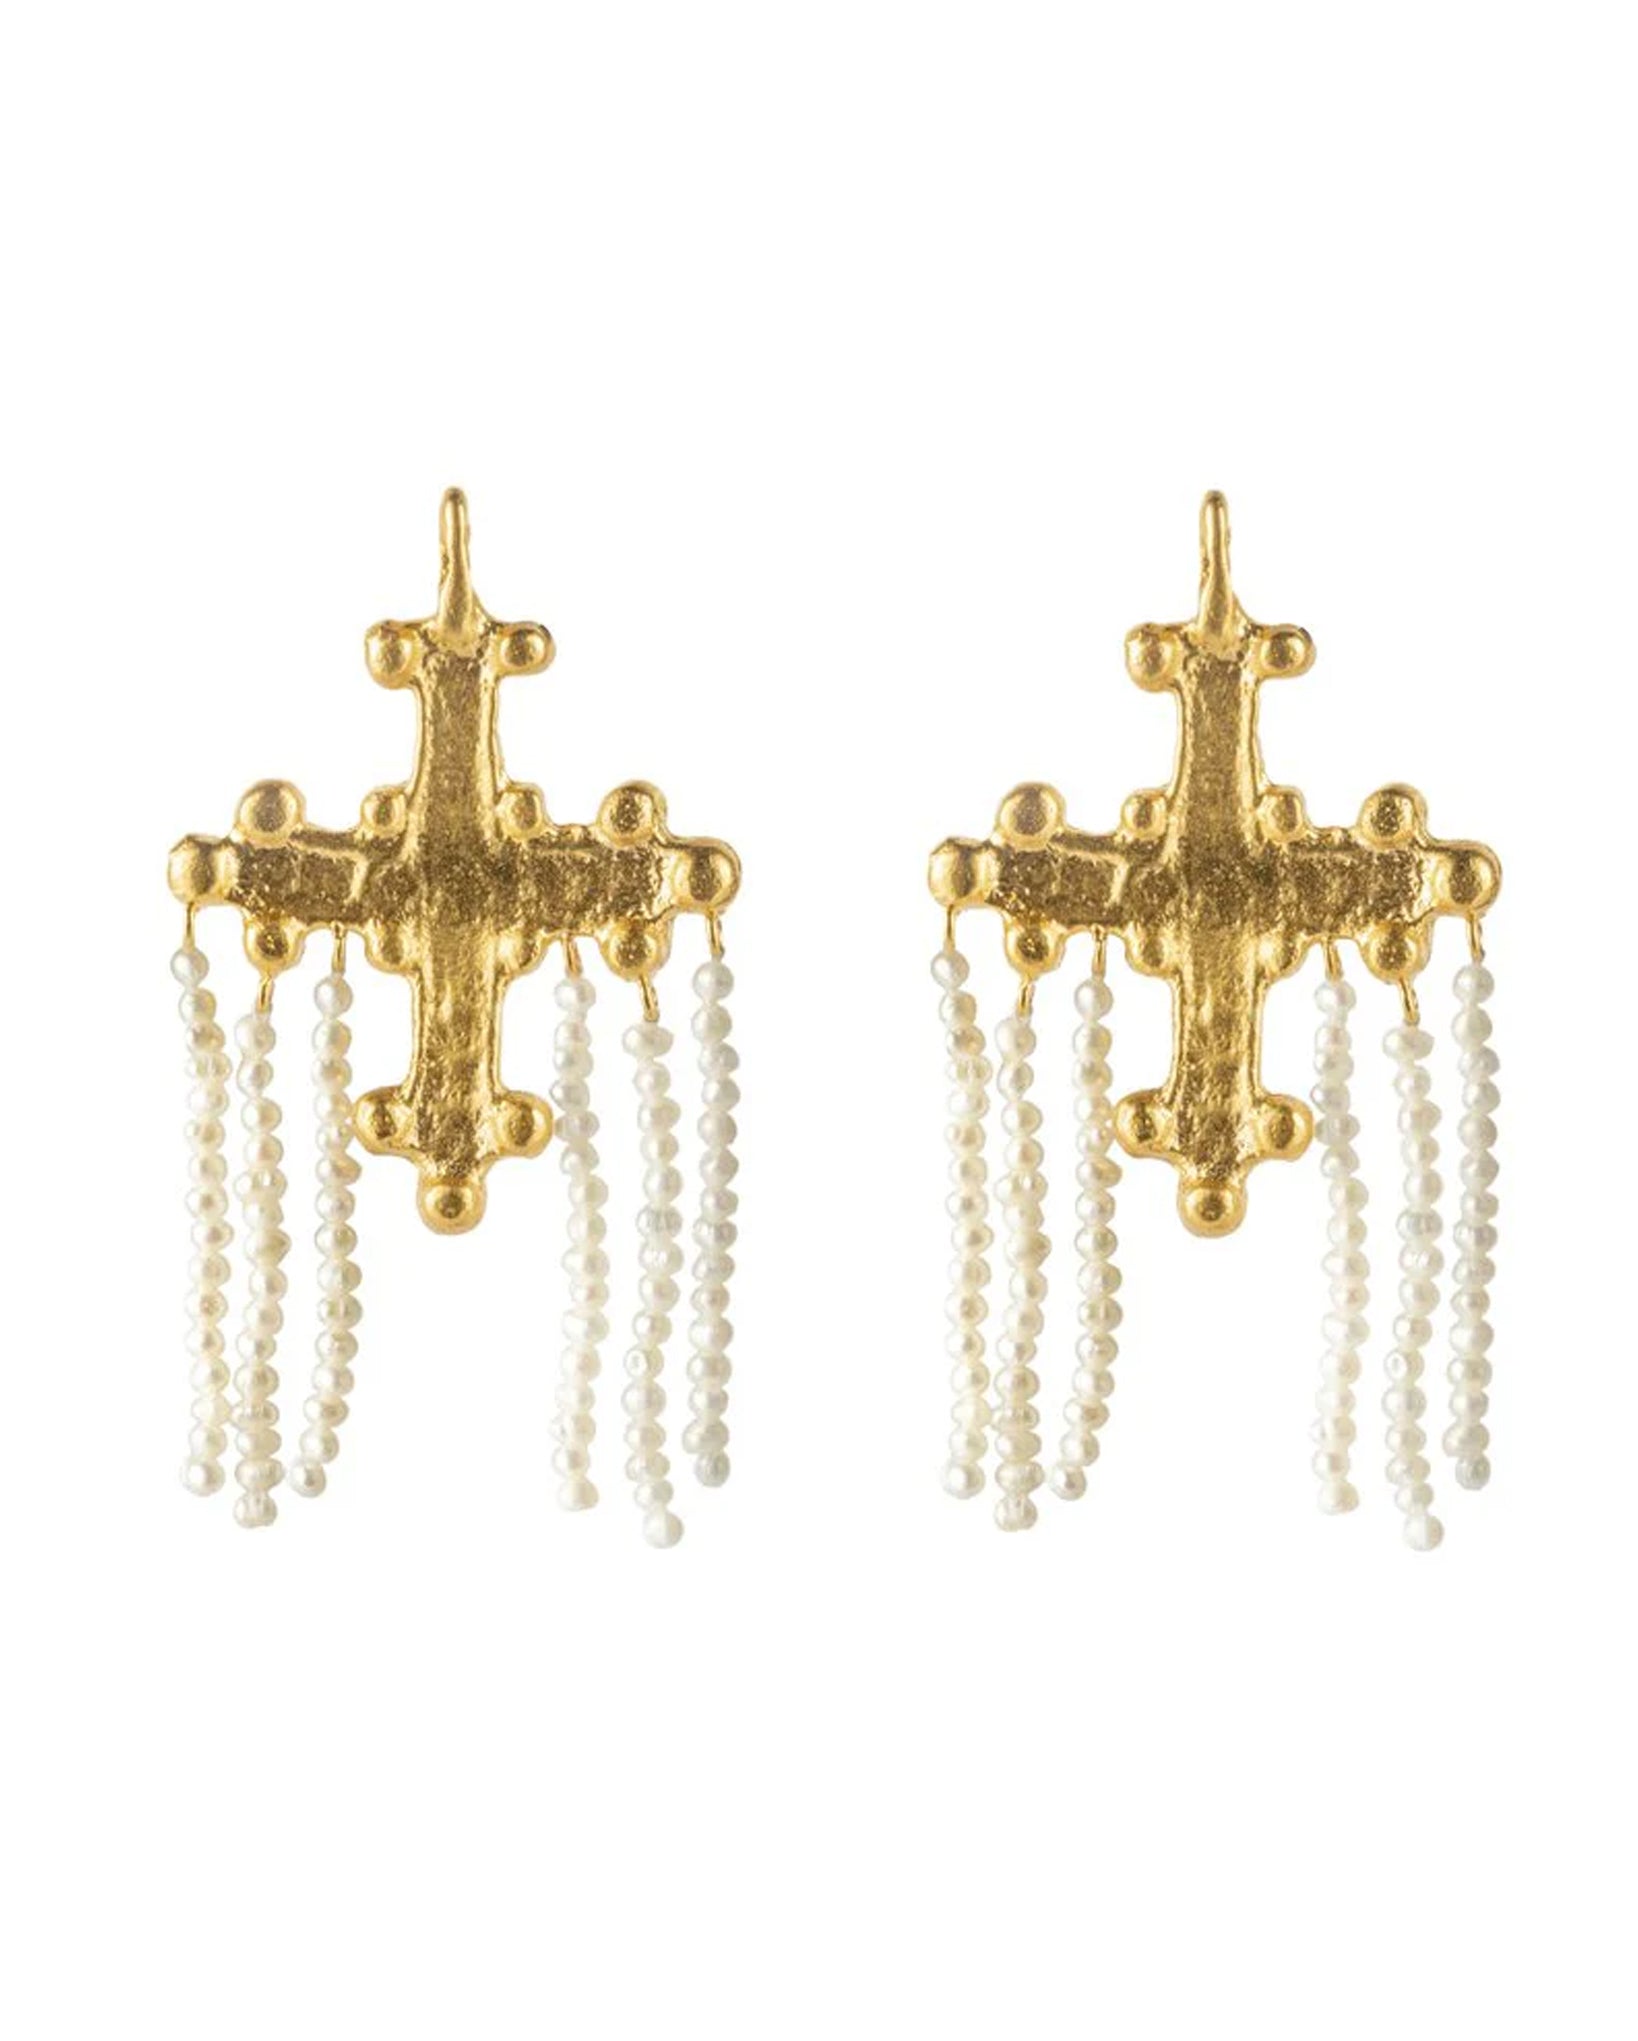 Crotalia Crucifix Earrings